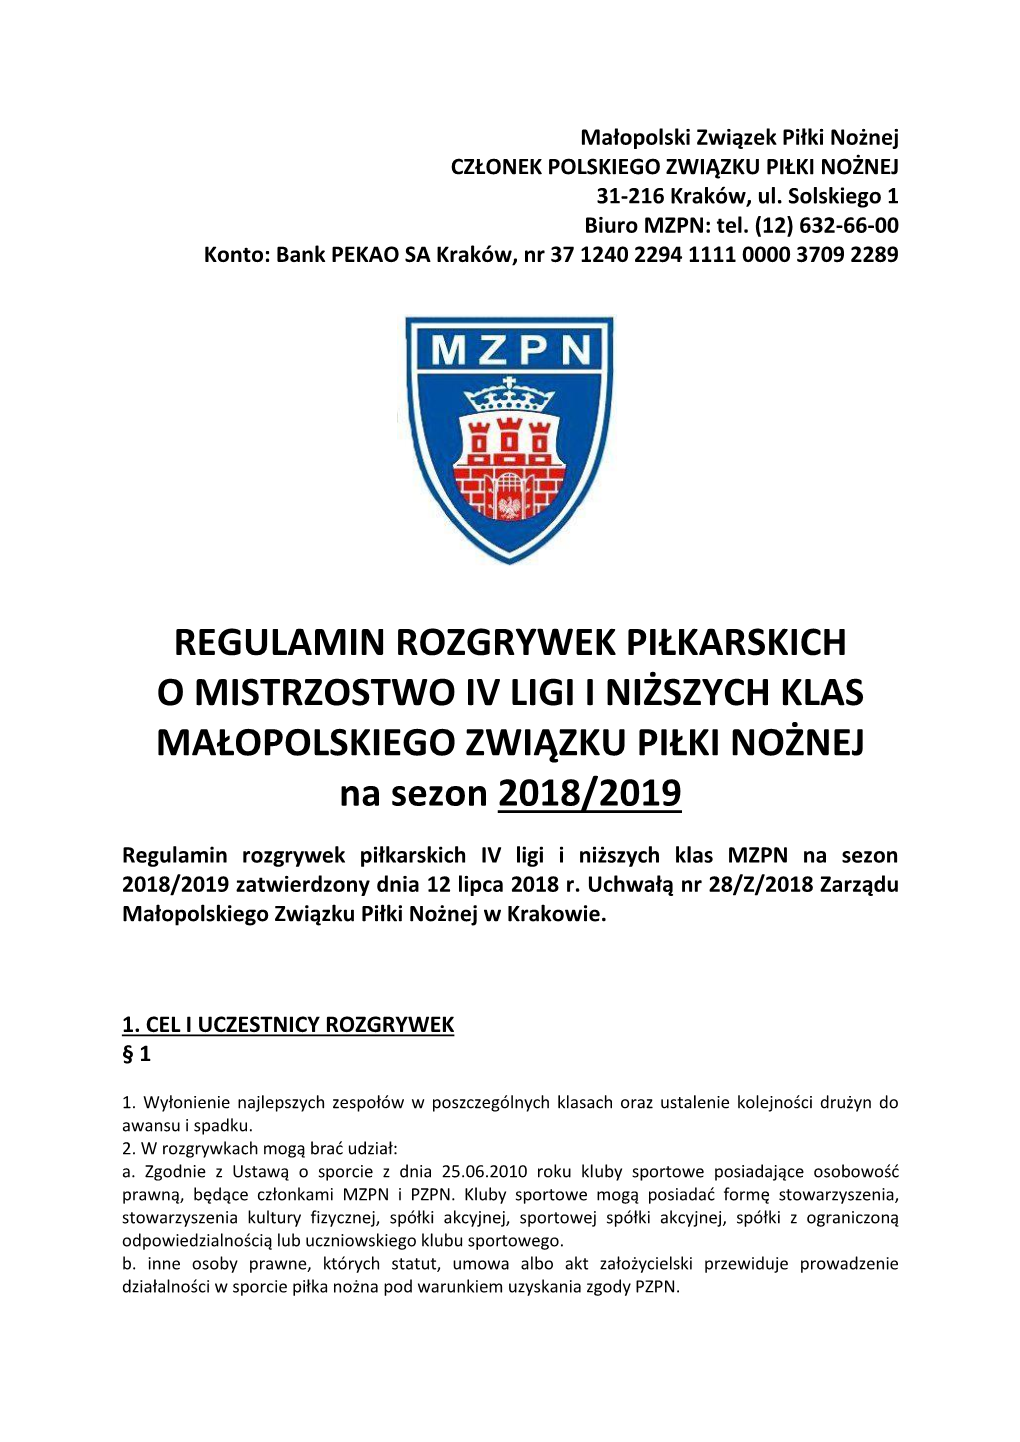 Regulamin Rozgrywek Piłkarskich IV Ligi I Niższych Klas MZPN Na Sezon 2018/2019 Zatwierdzony Dnia 12 Lipca 2018 R